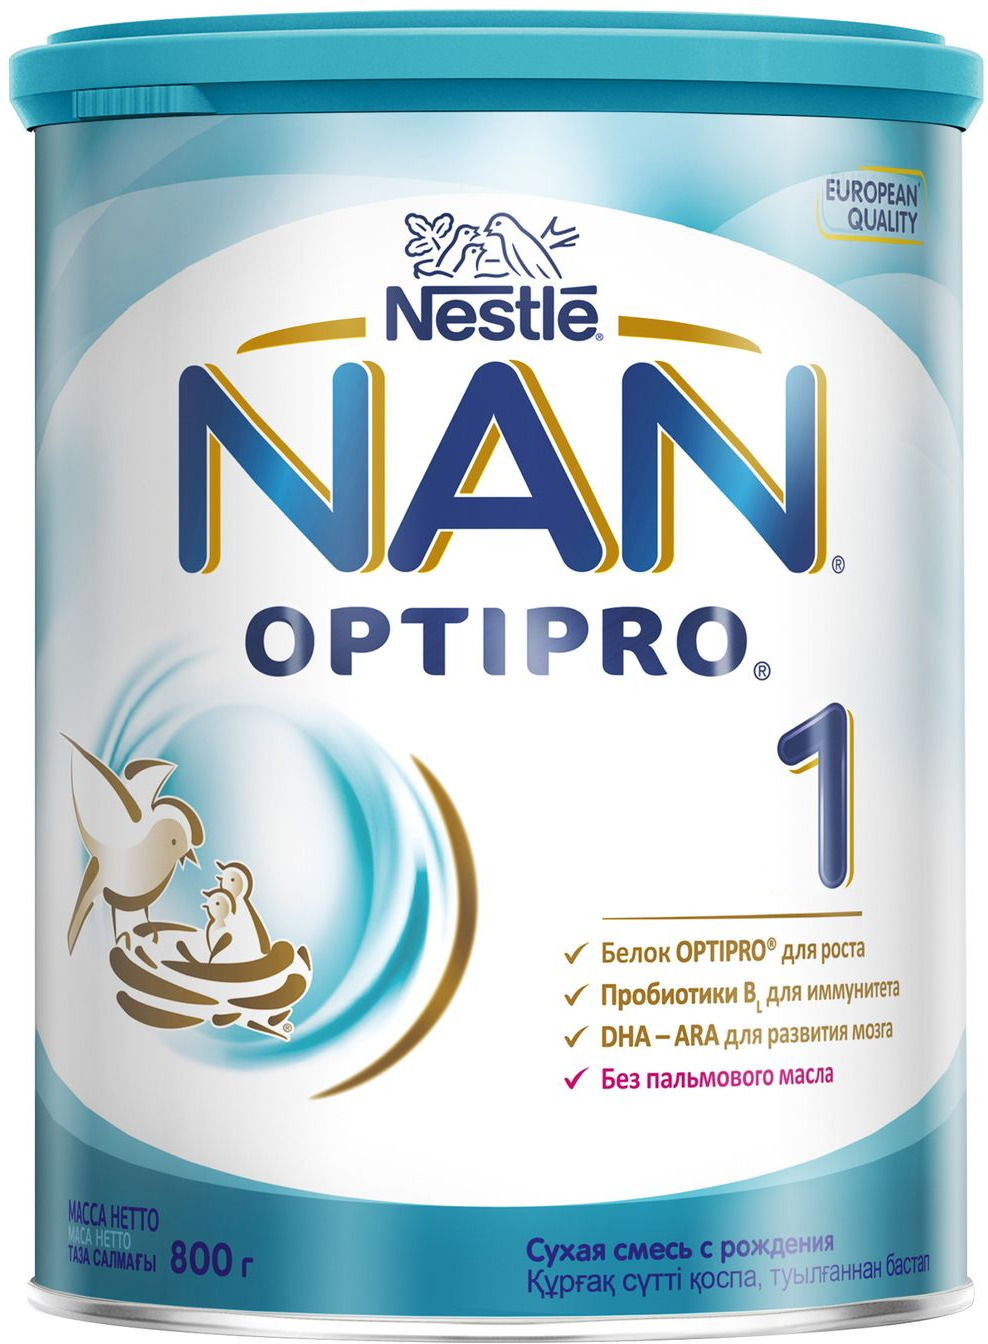 фото NAN 1 OPTIPRO смесь молочная, с рождения 800 г